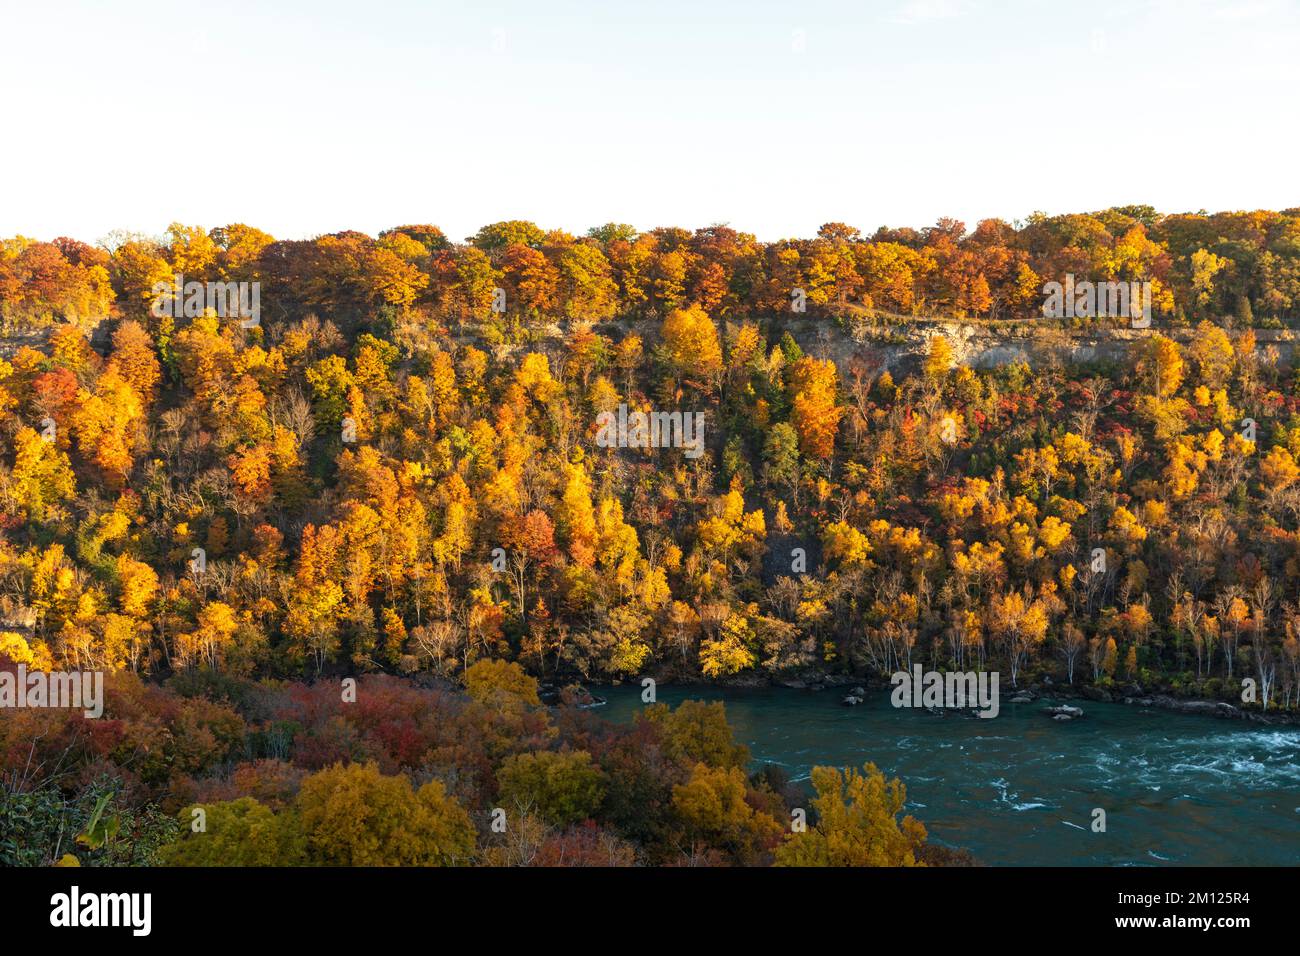 Canada, Ontario, Cascate del Niagara, la gola del Niagara con il fiume Niagara in autunno con colori autunnali Foto Stock